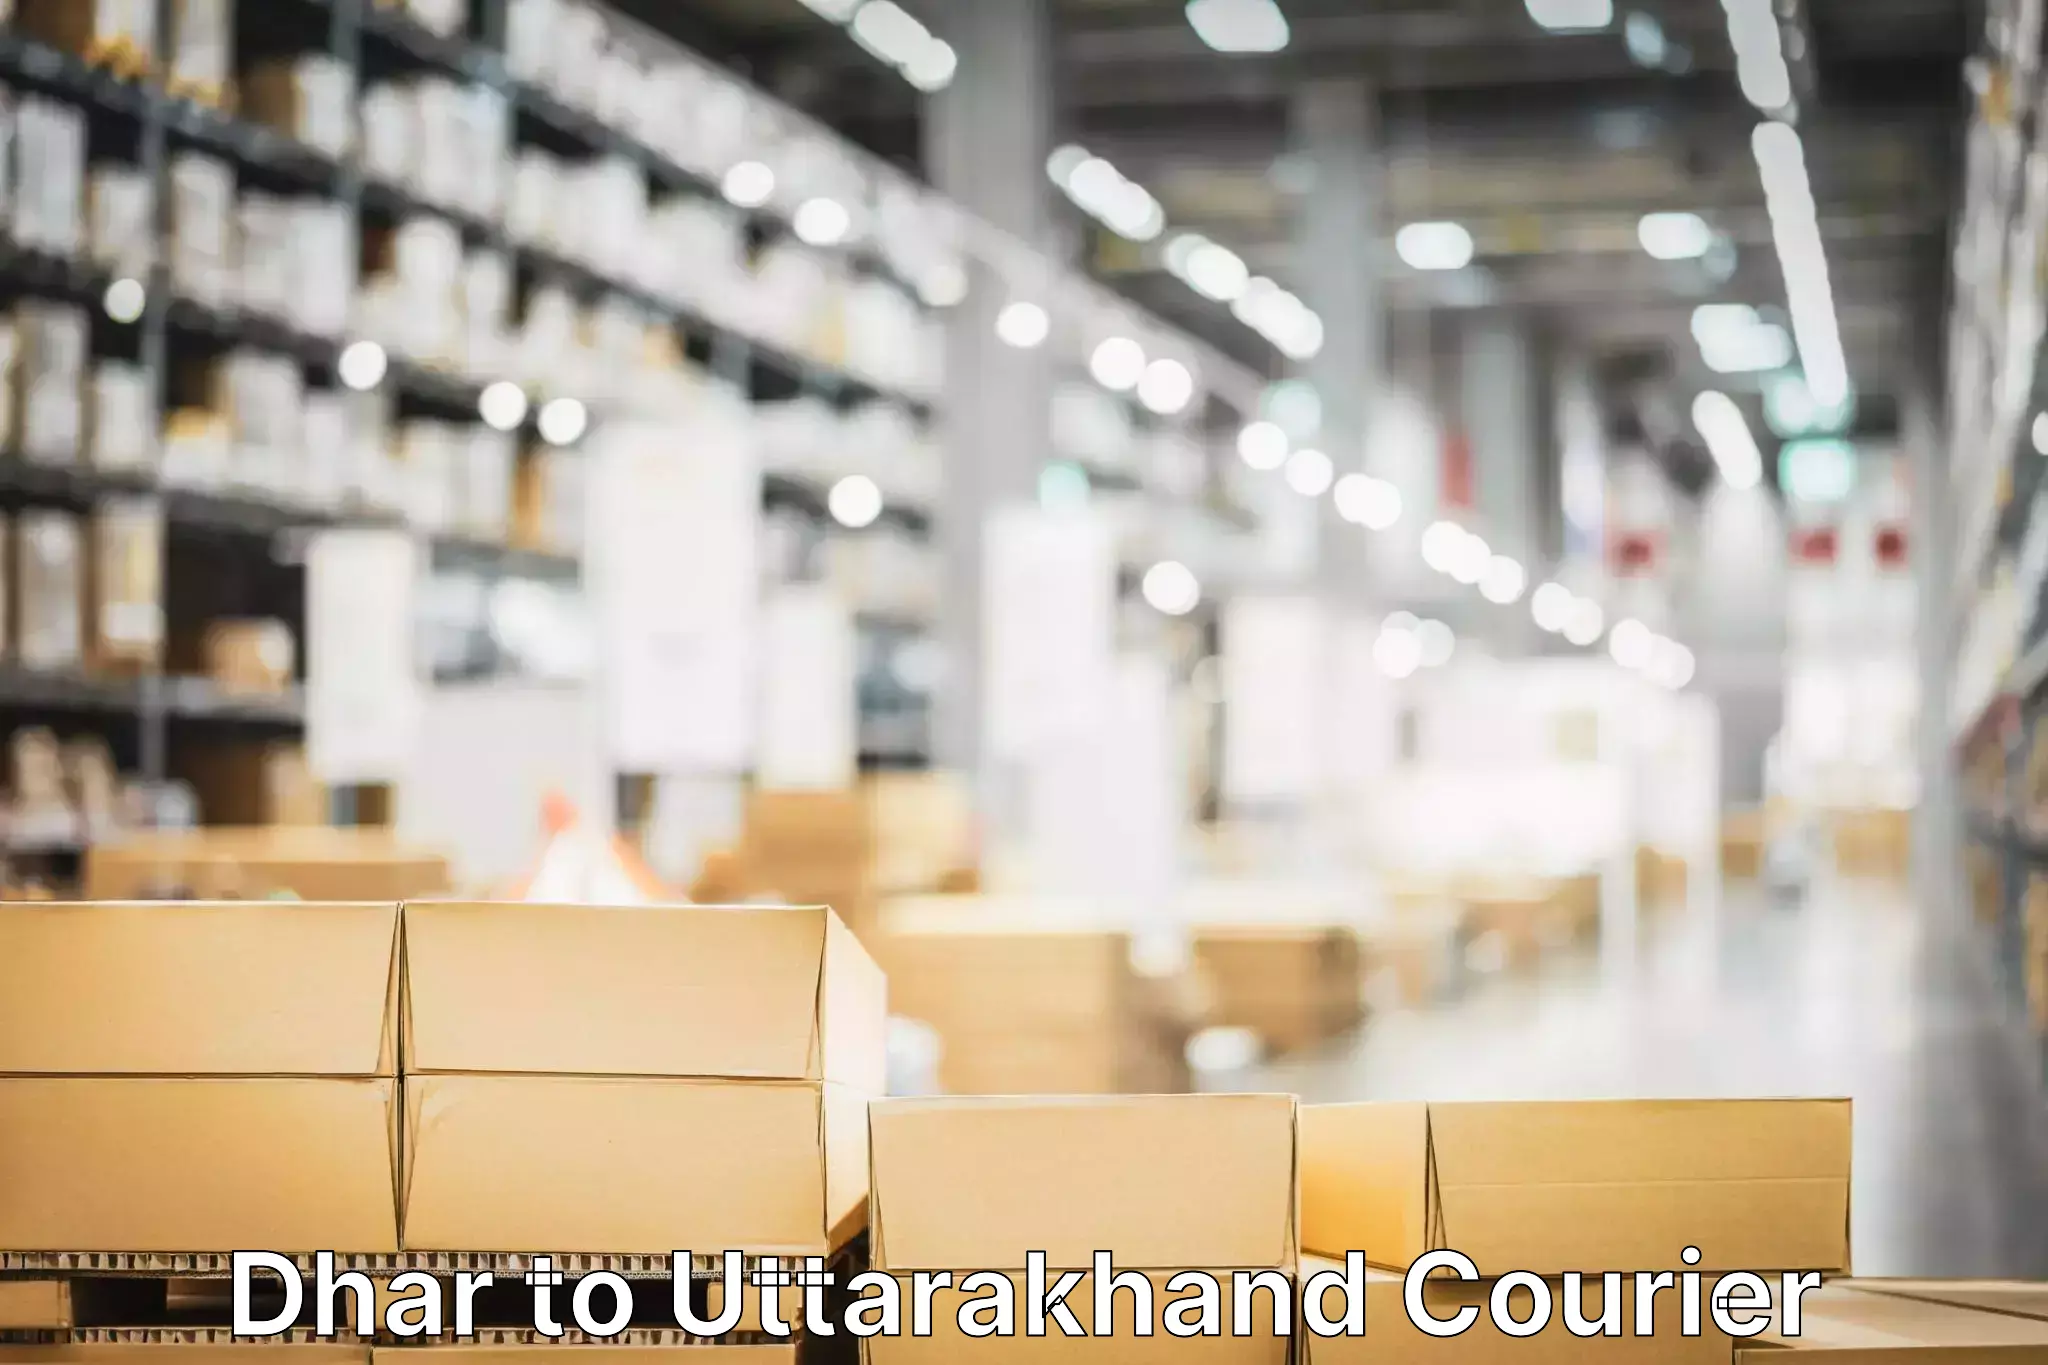 Global shipping solutions Dhar to Uttarakhand